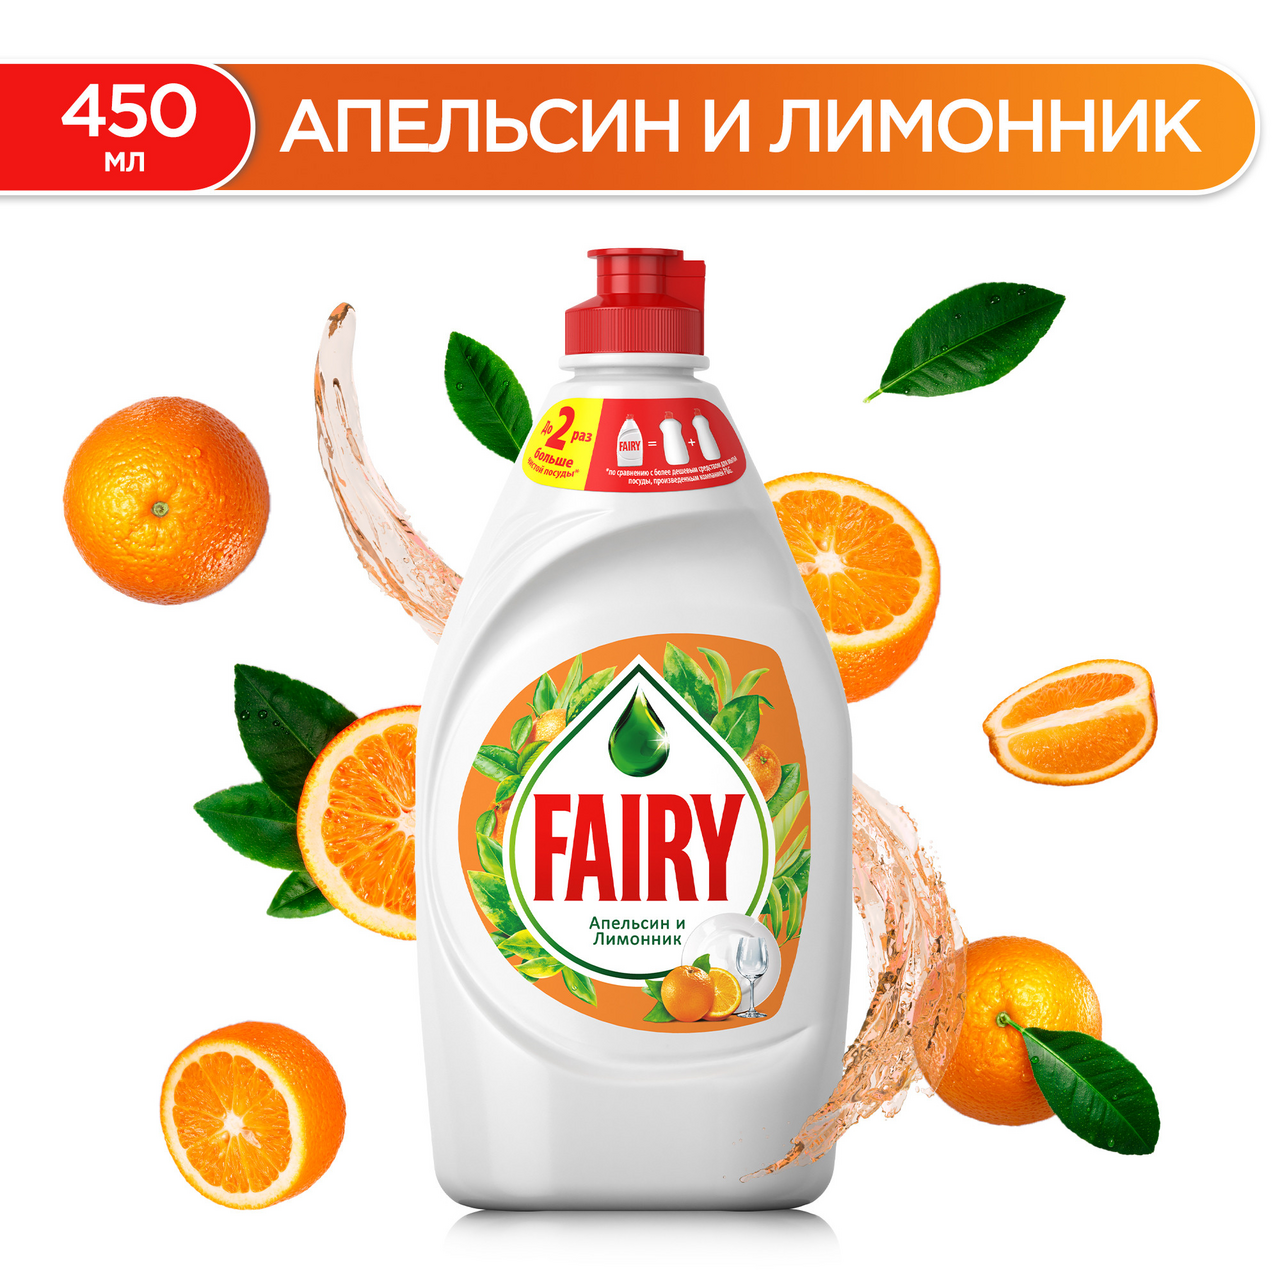 Средство для мытья посуды Fairy Апельсин и лимонник 450 мл.